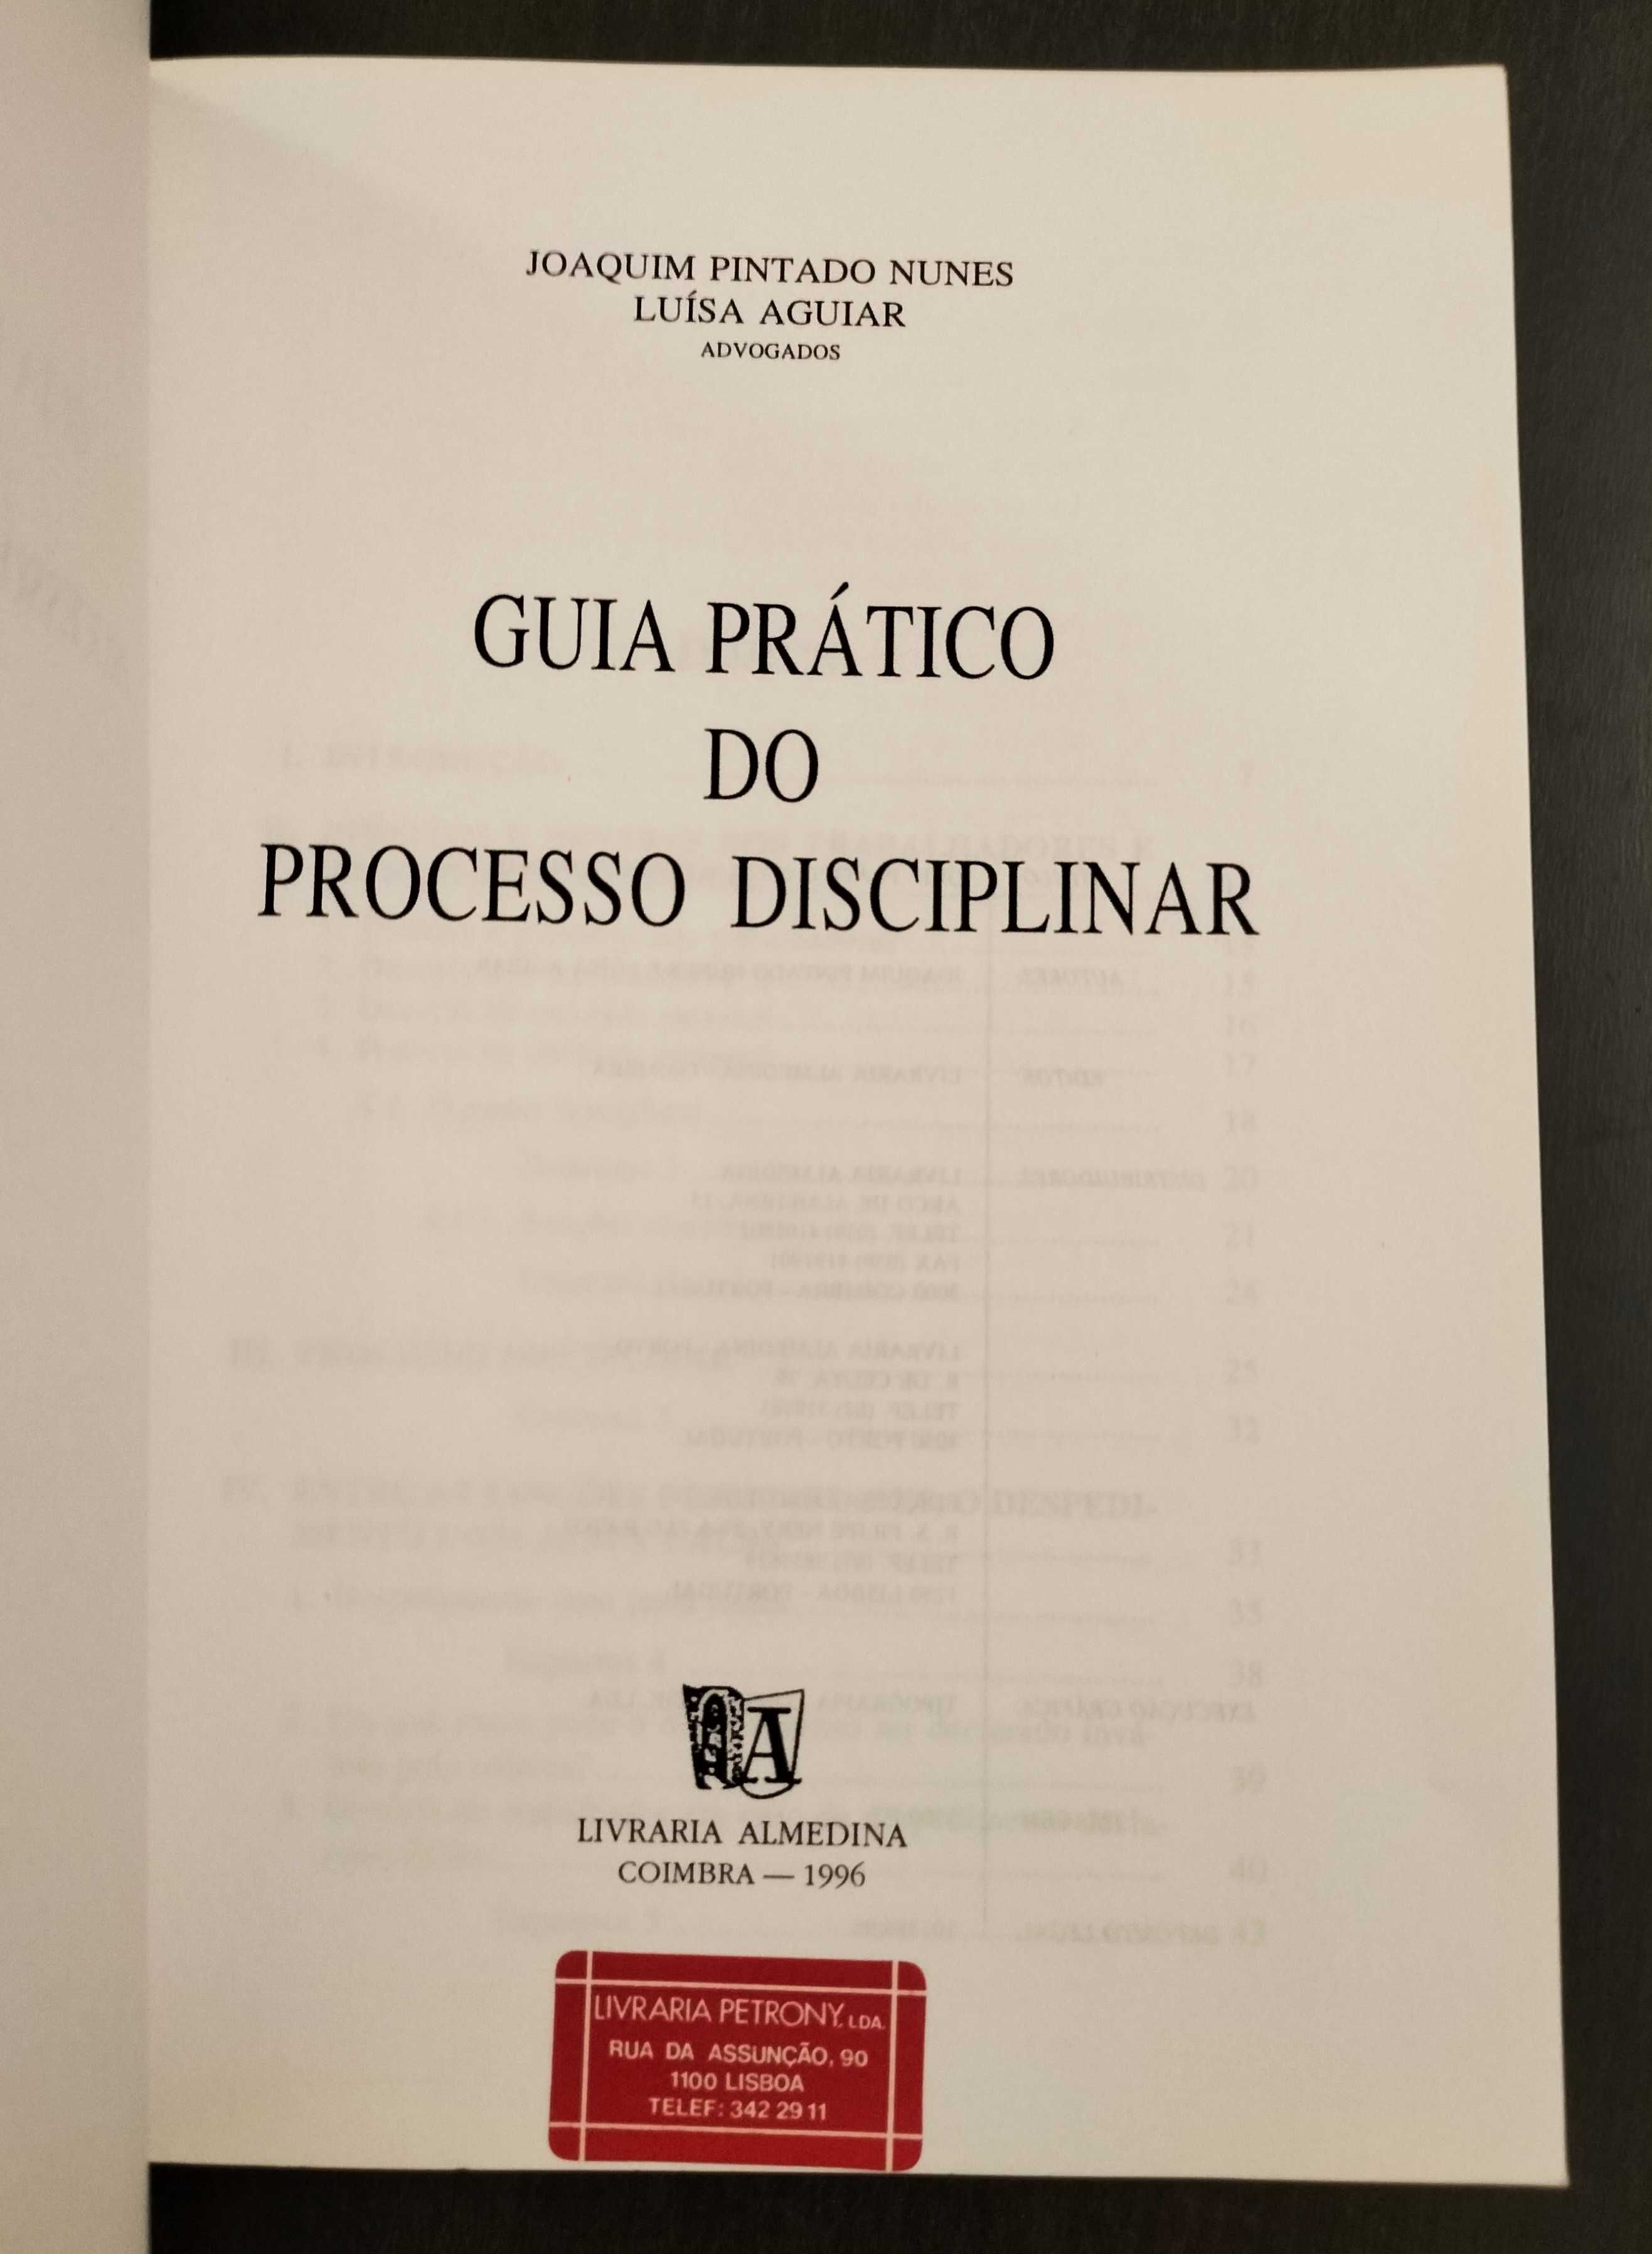 Joaquim P. Nunes - Luísa Aguiar - Guia prático do processo disciplinar